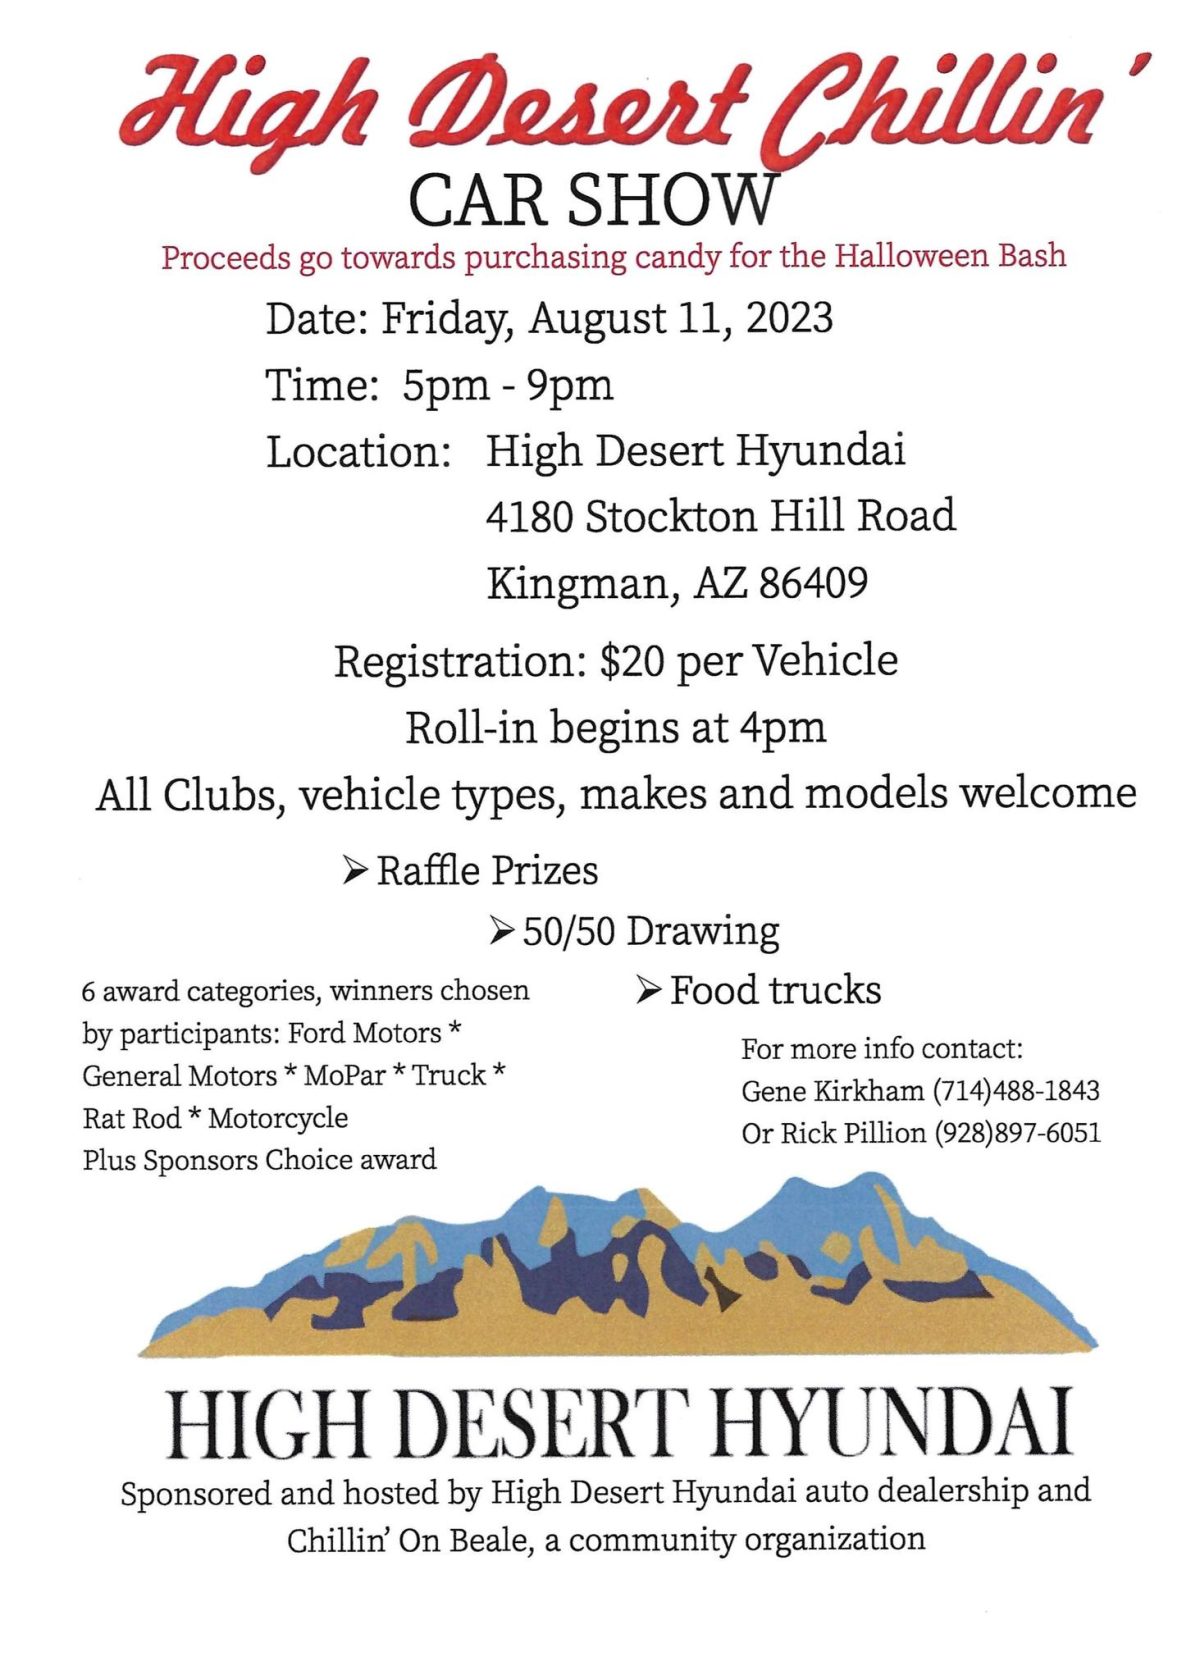 High Desert Chillin Car Show